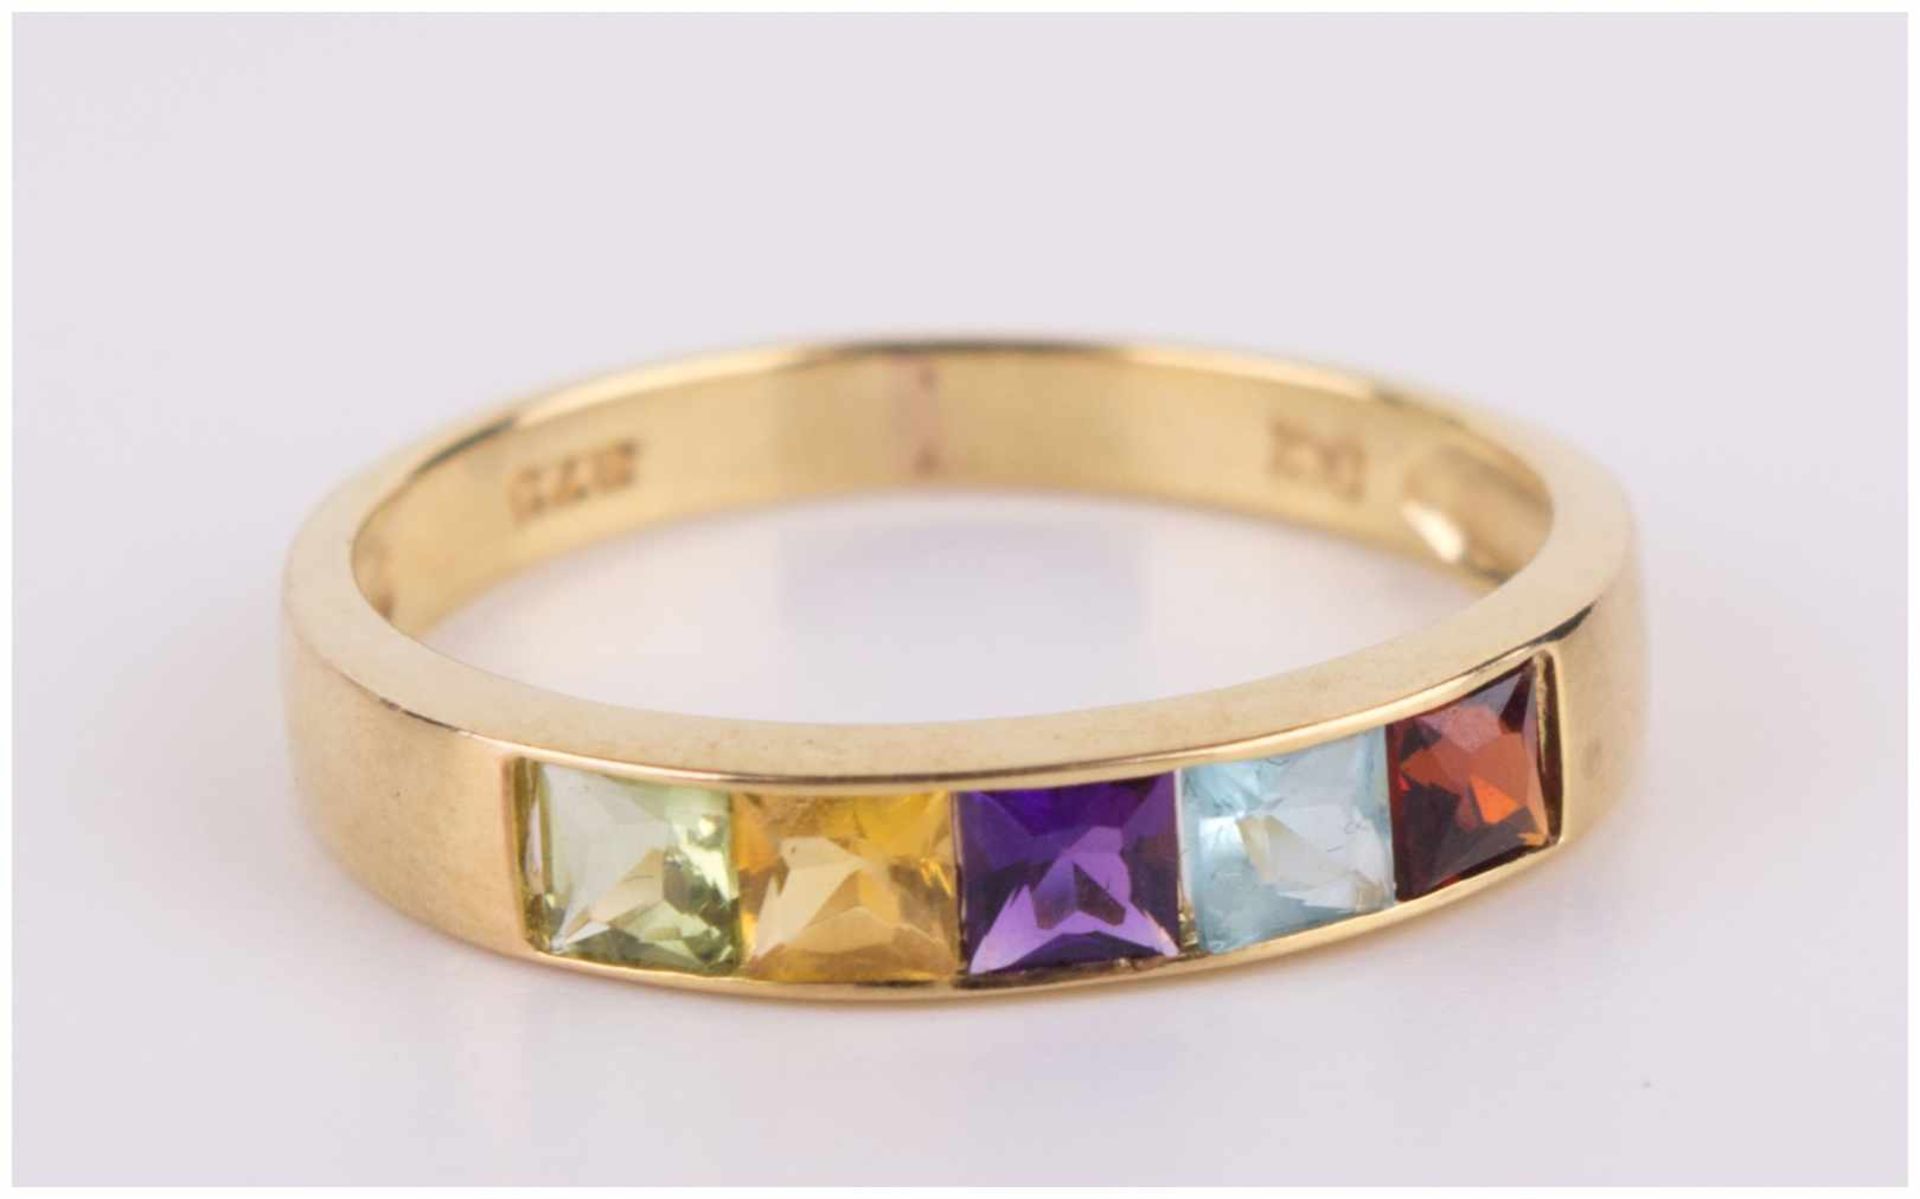 Granat-Amethist Ring / Garnet-Amethyst gold ring - GG 375/000, Gesamtgewicht ca. 1,8 [...] - Image 7 of 10